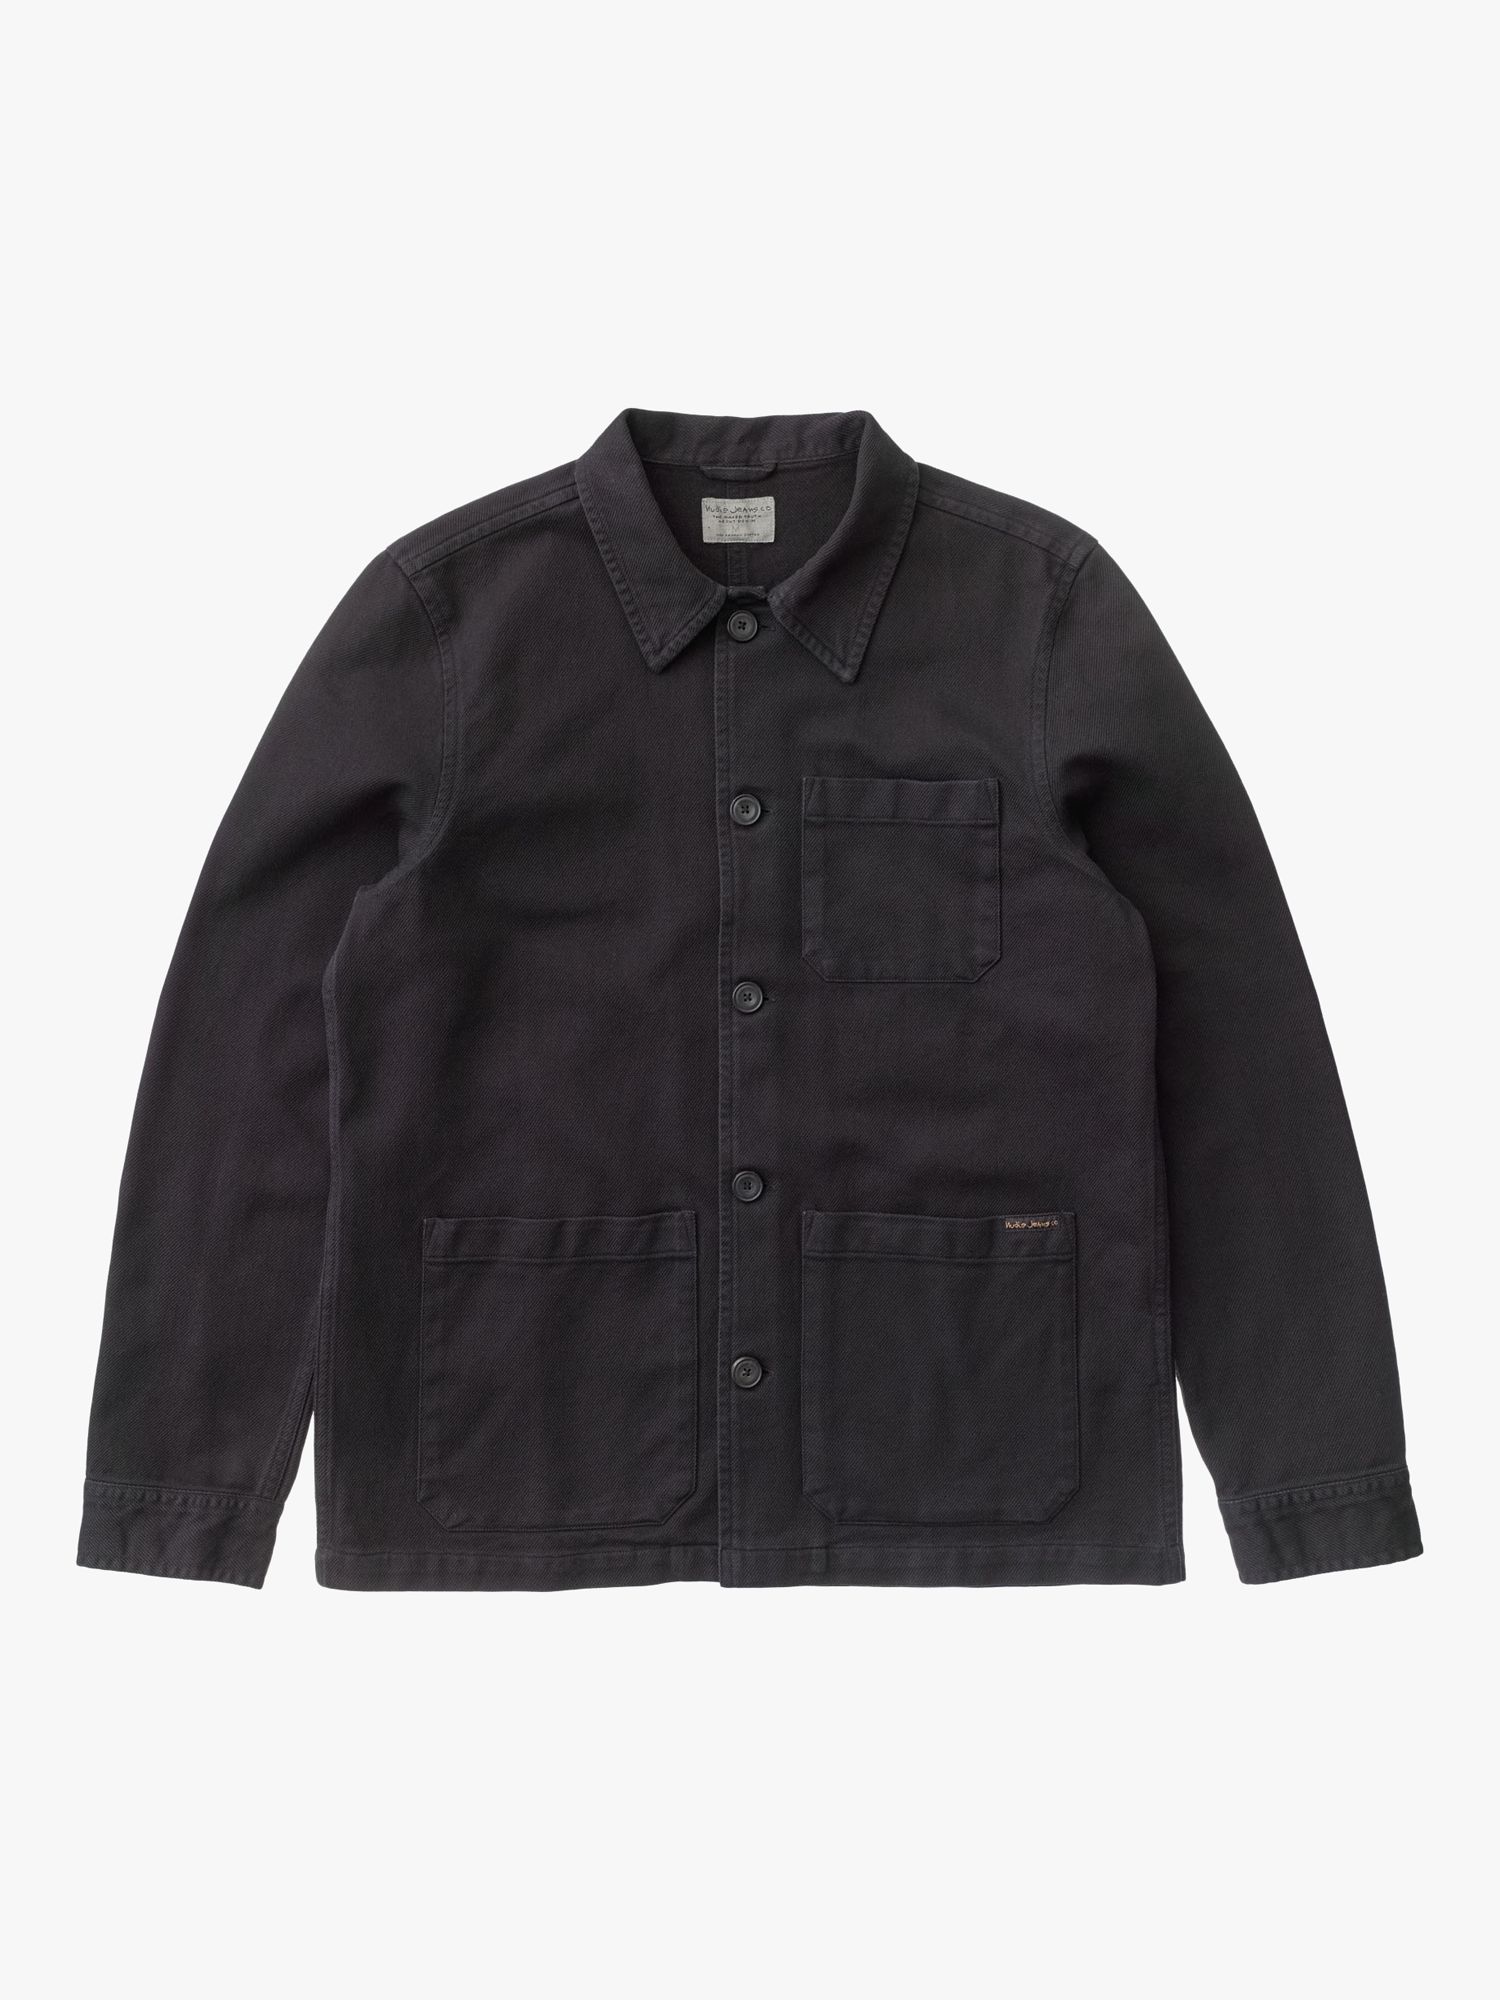 Nudie Jeans Barney Worker Jacket, Black, S